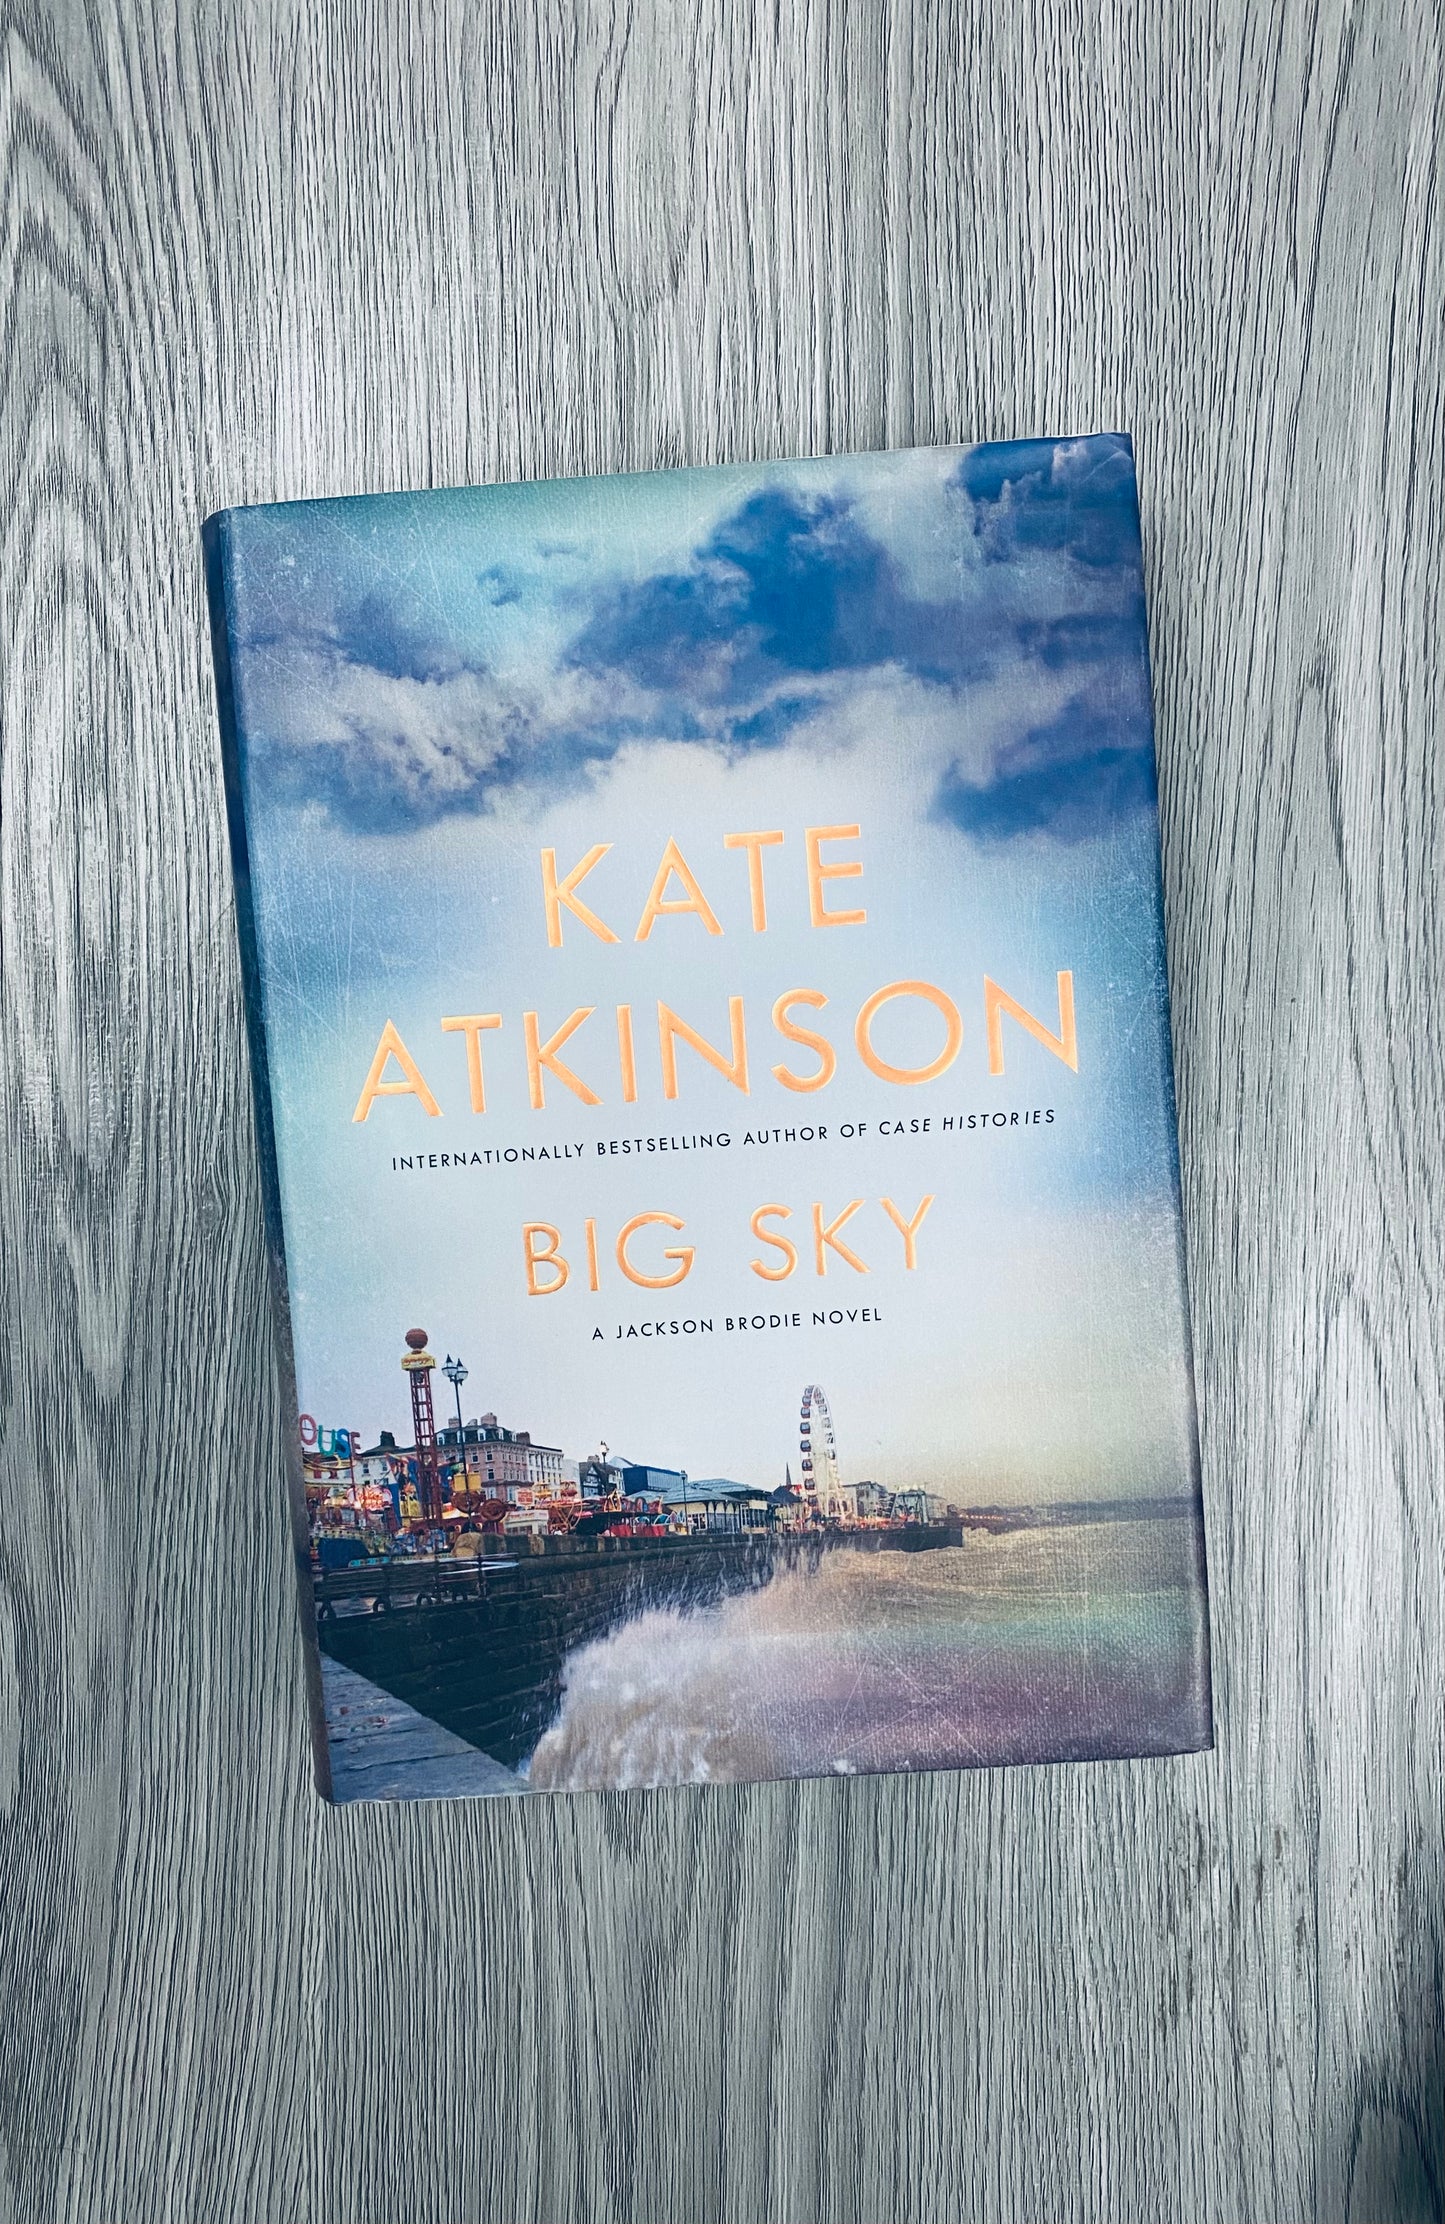 Big Sky (Jackson Brodie #5 )by Kate Atkinson-Hardcover